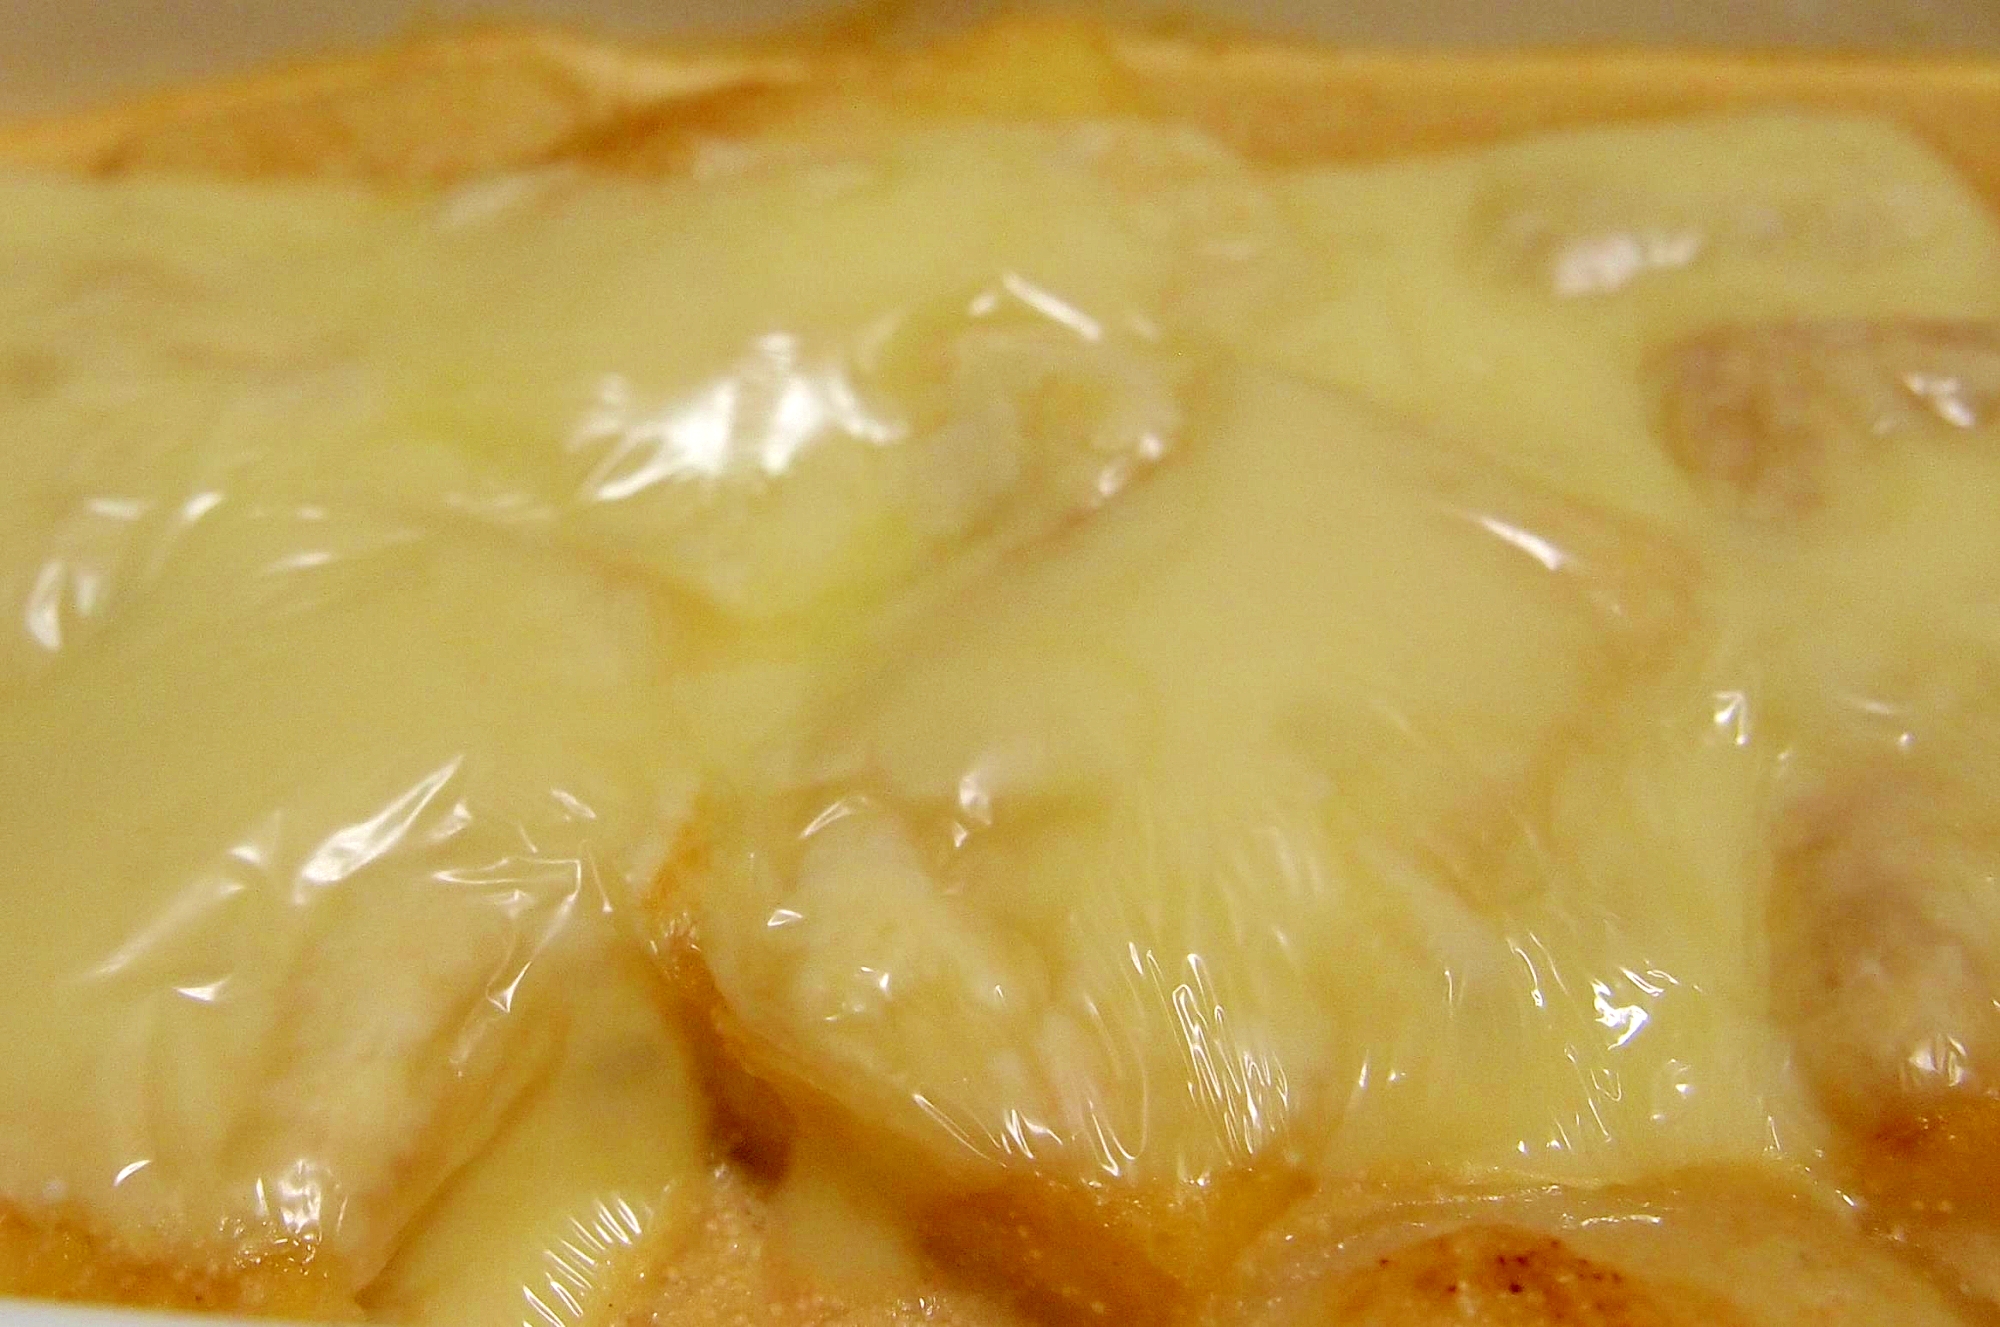 餅と厚揚げのたらこチーズグラタン